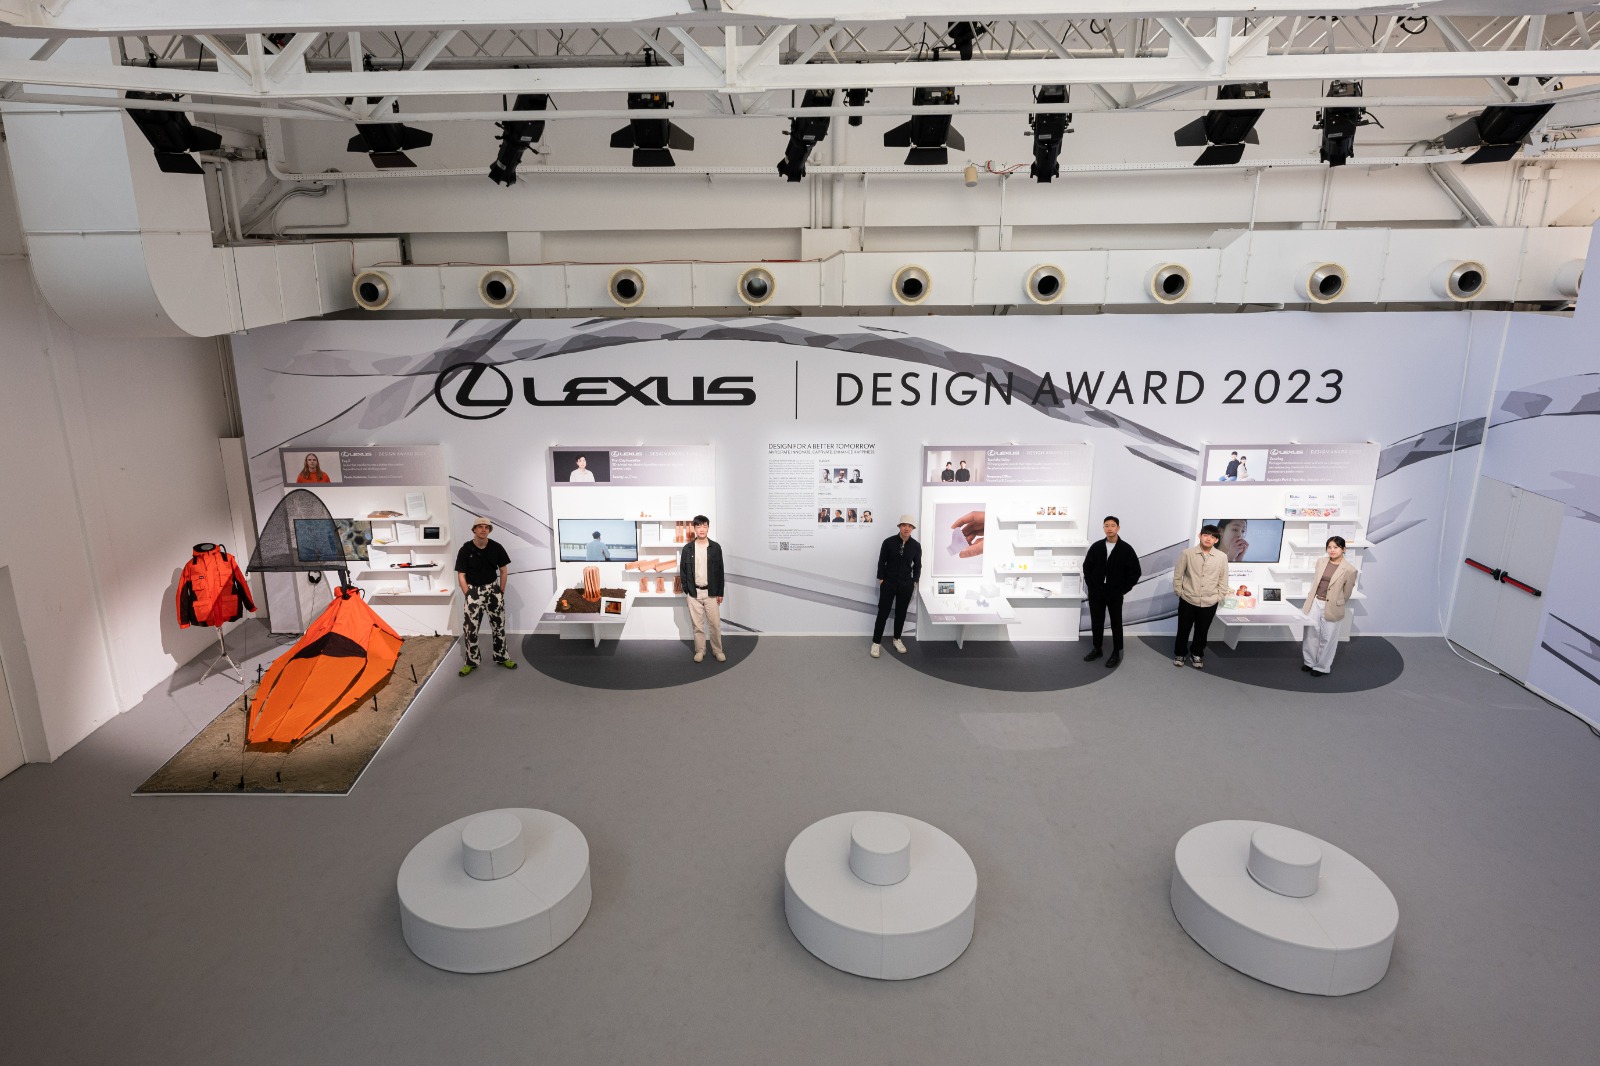 السويدي بافيلز هيدستروم يحصد جائزة لكزس للتصميم 2023 2